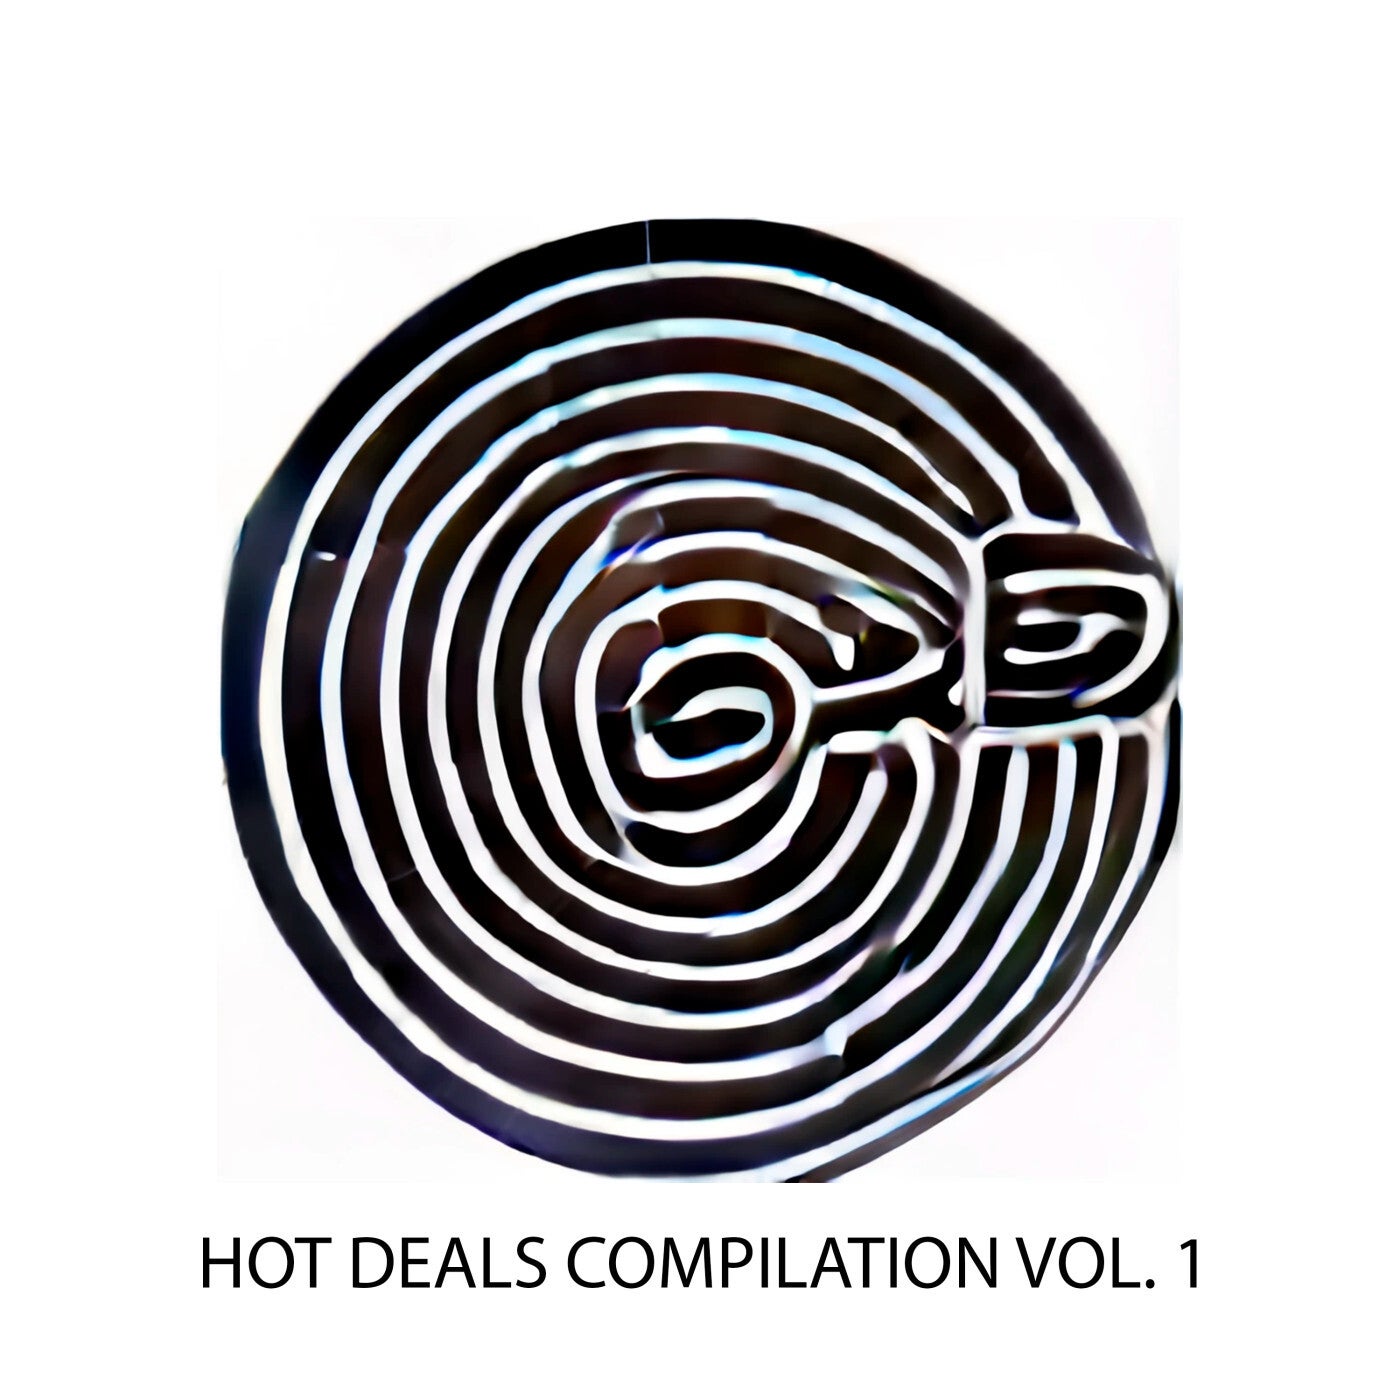 Hot Deals Compilation Vol. 1